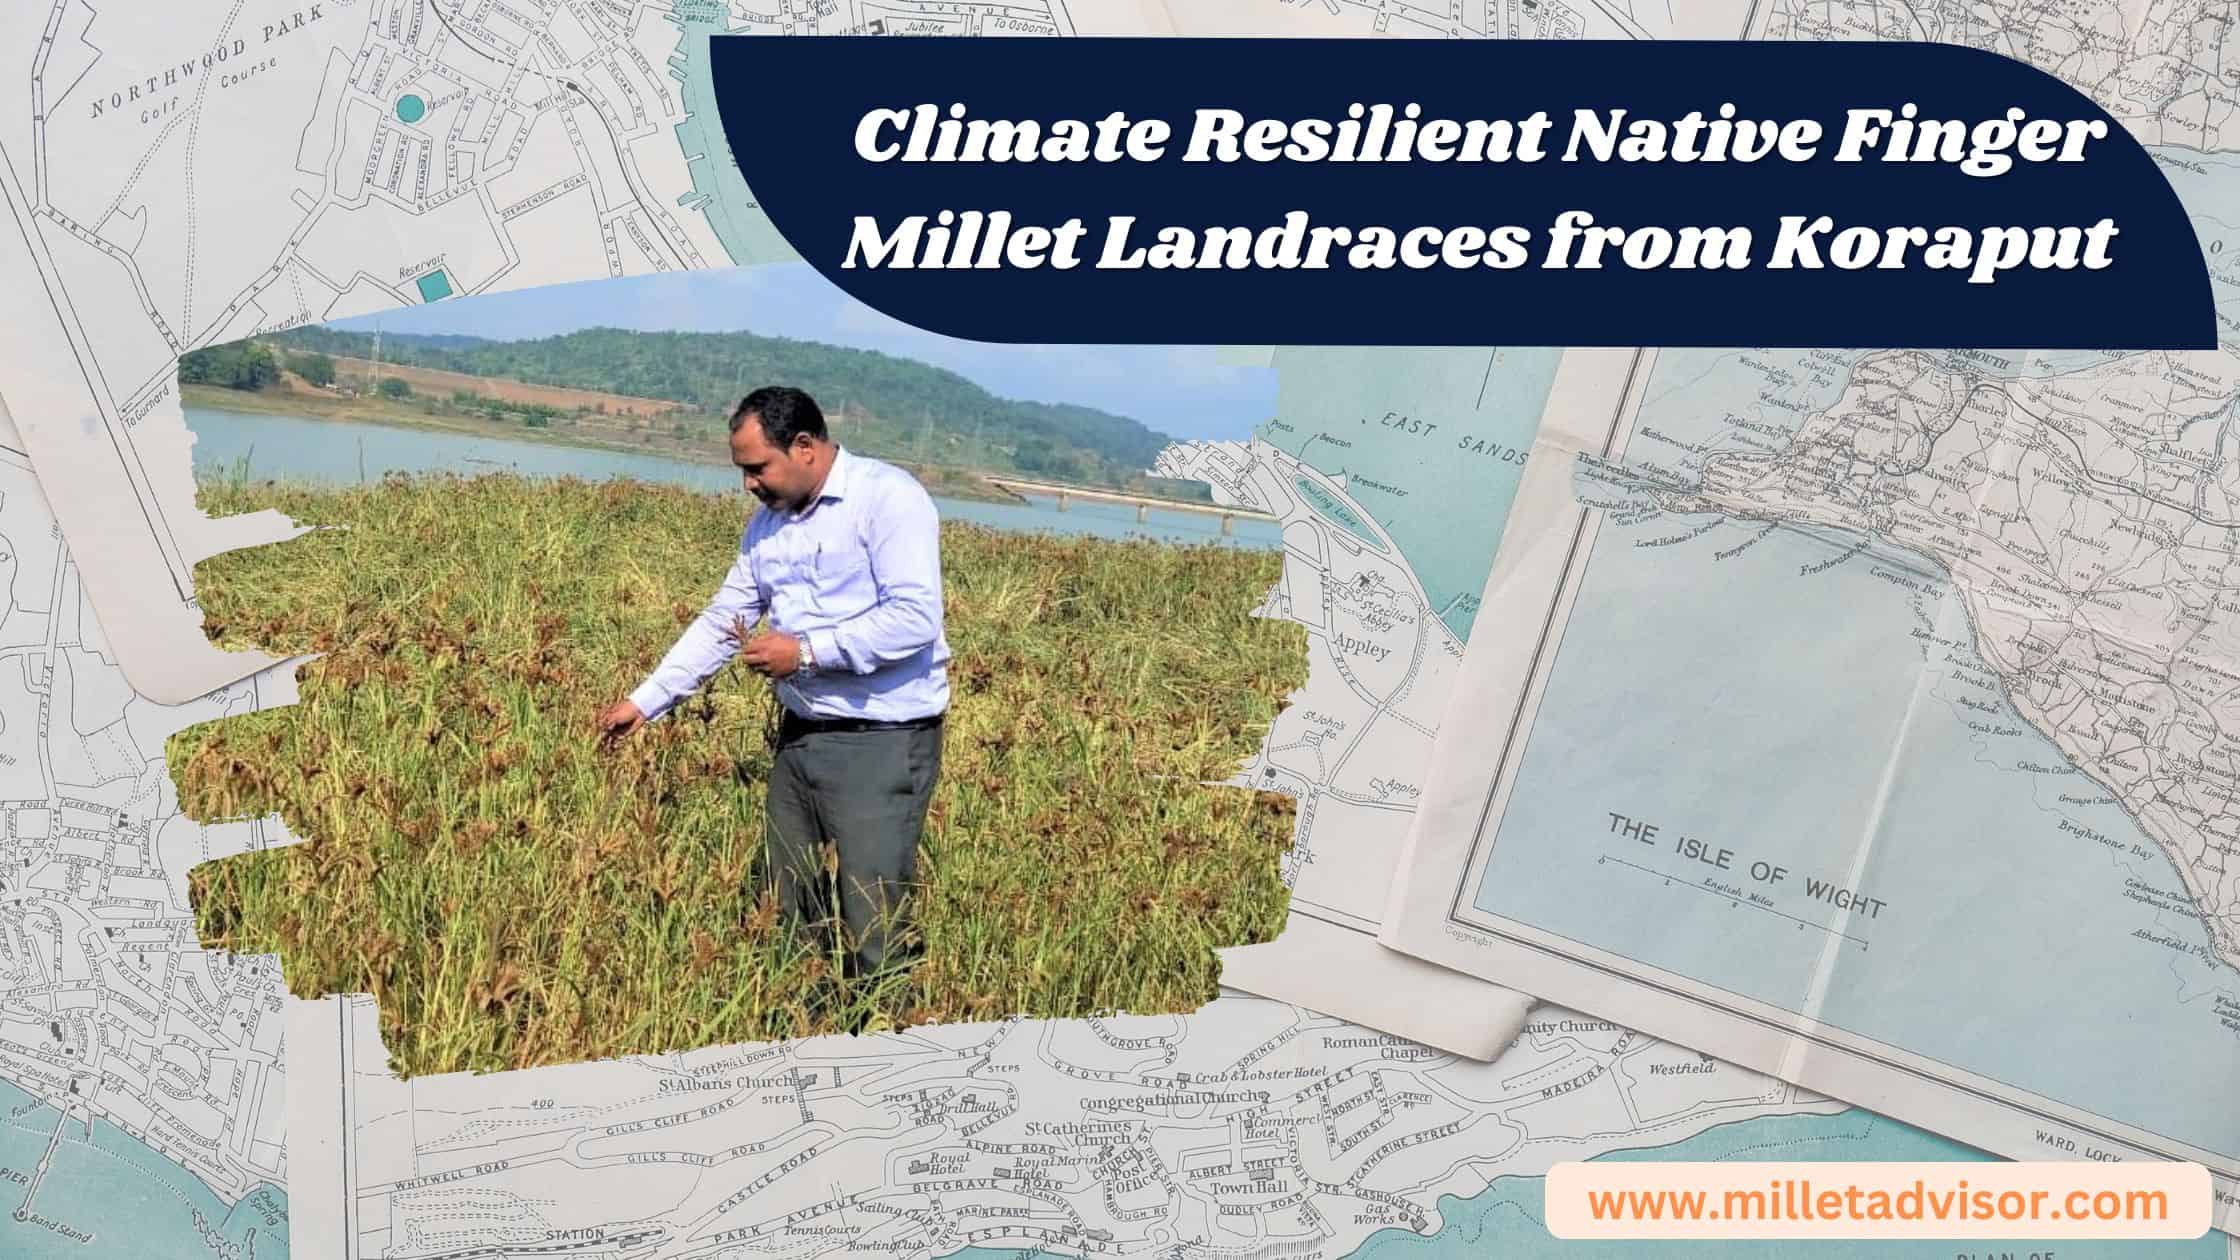 Climate Resilient Native Finger Millet Landraces